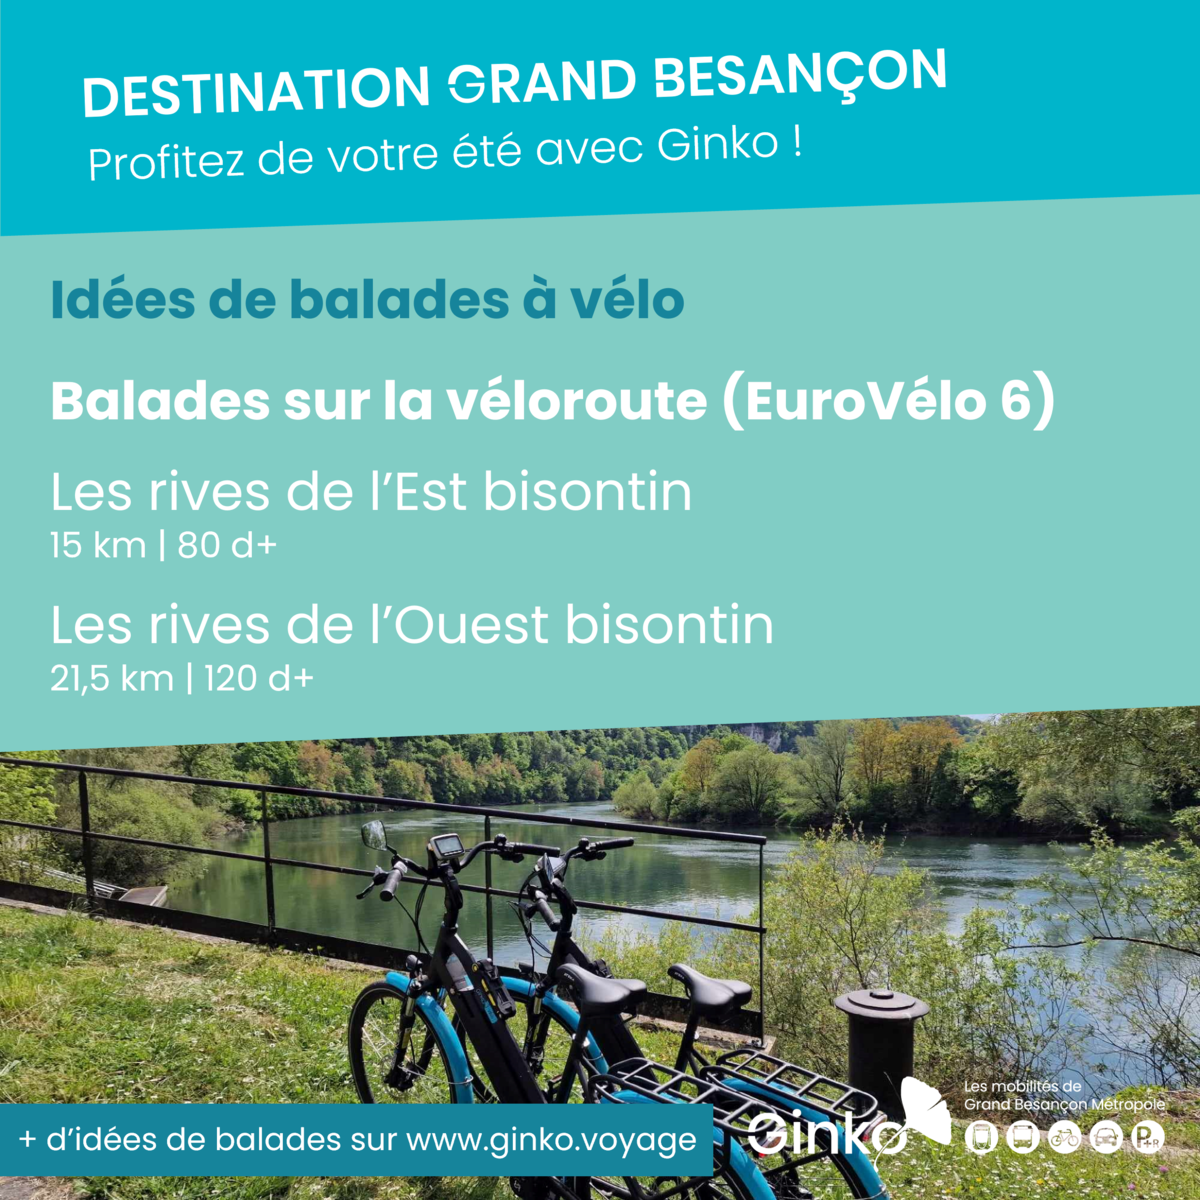 Ginko, les mobilités de Grand Besançon Métropole